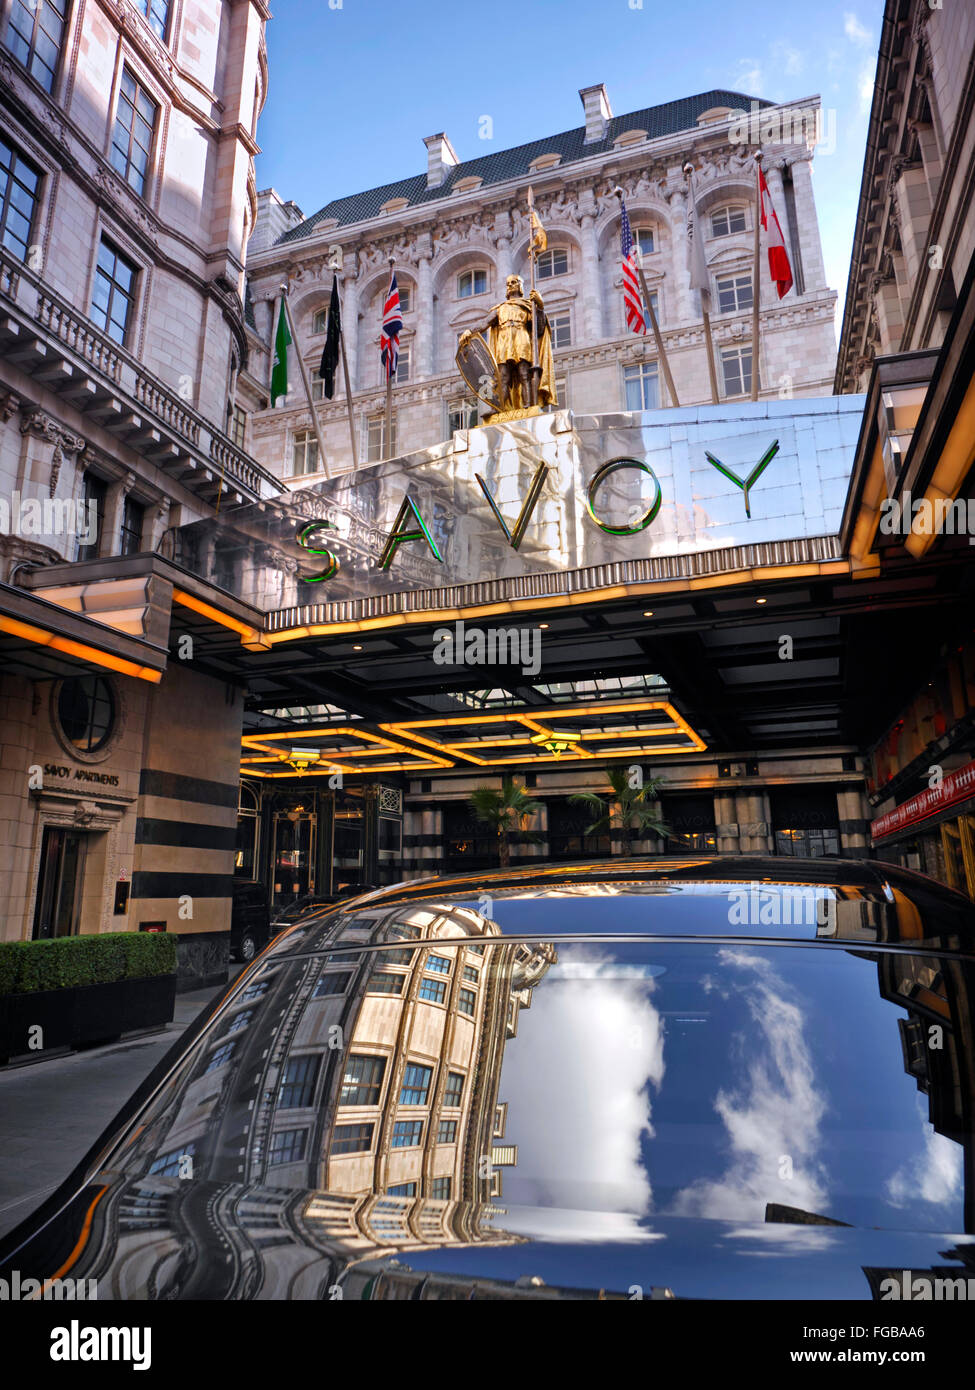 SAVOY HOTEL vue extérieure du luxueux hall d'entrée de l'hôtel 5 étoiles Savoy avec reflet du ciel dans la voiture Rolls Royce The Strand London WC2 Banque D'Images